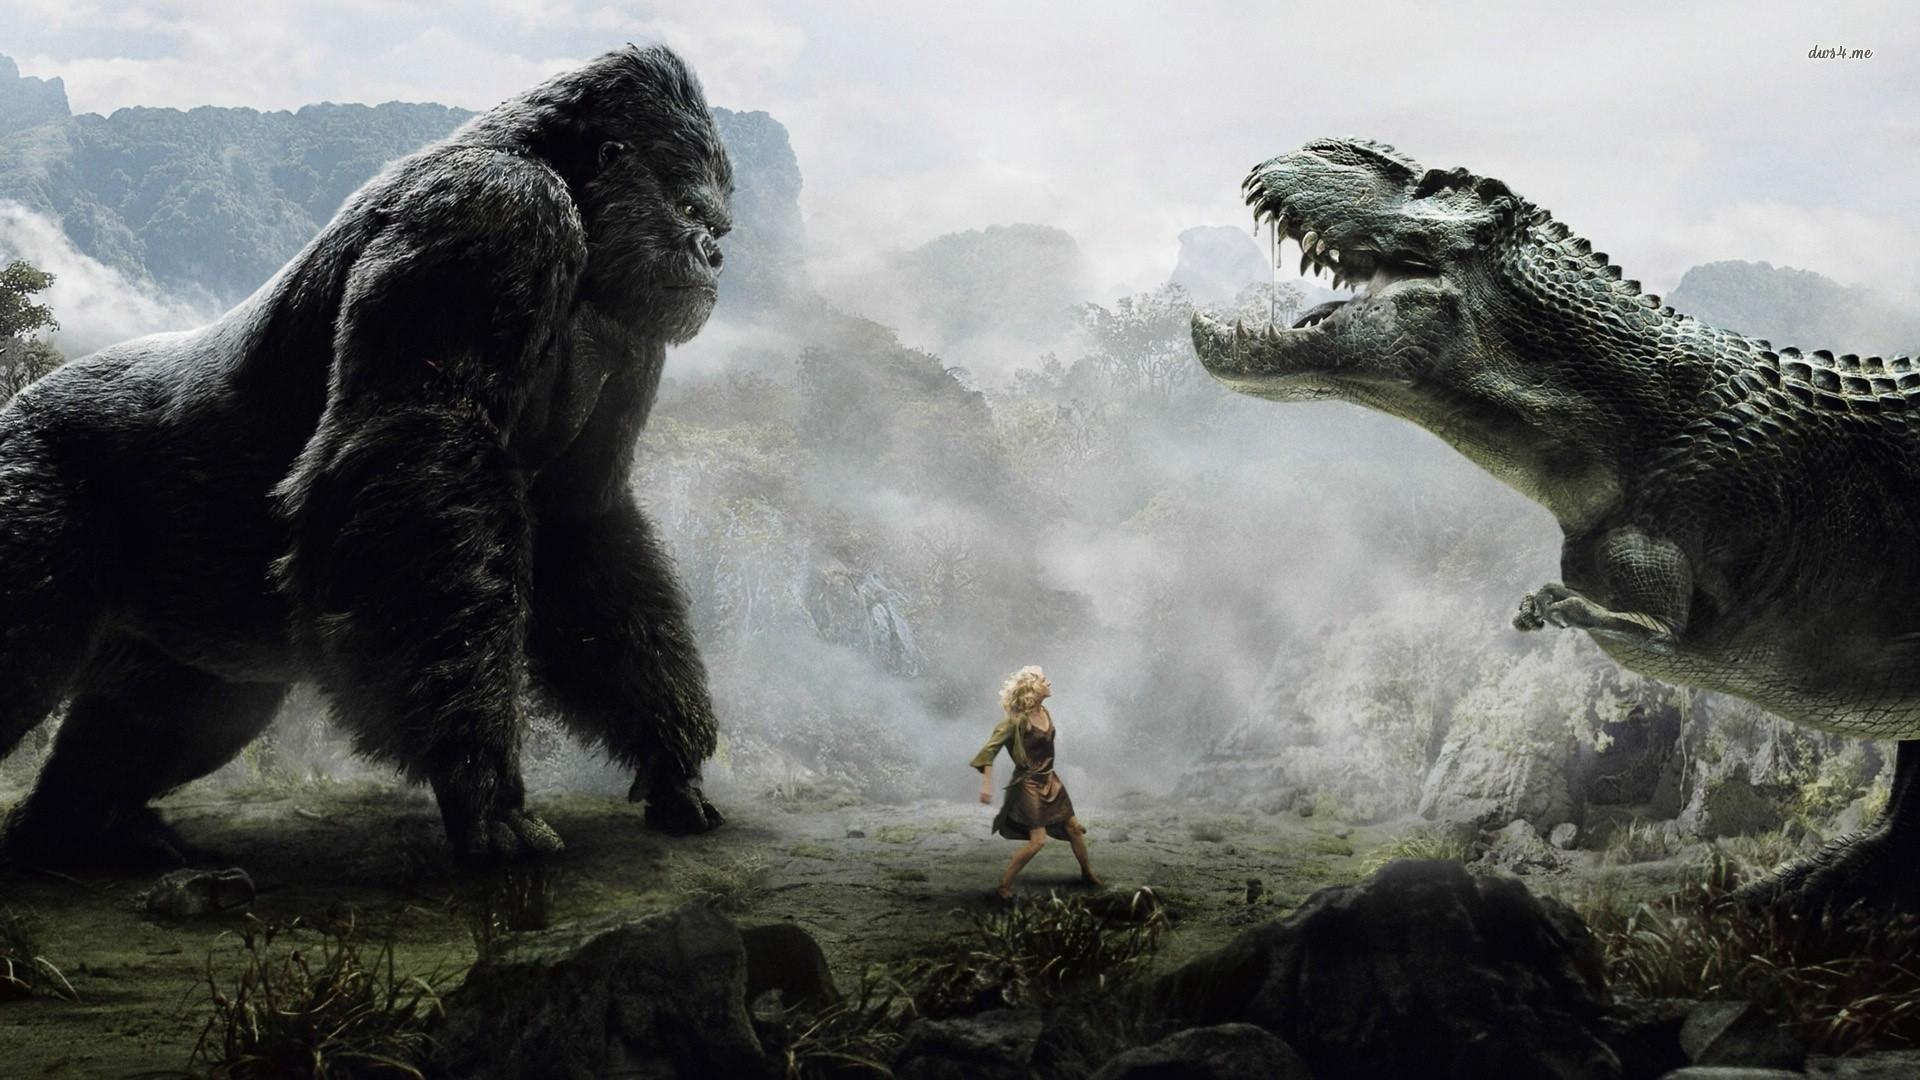 Godzilla Vs King Kong HD Wallpapers - Wallpaper Cave